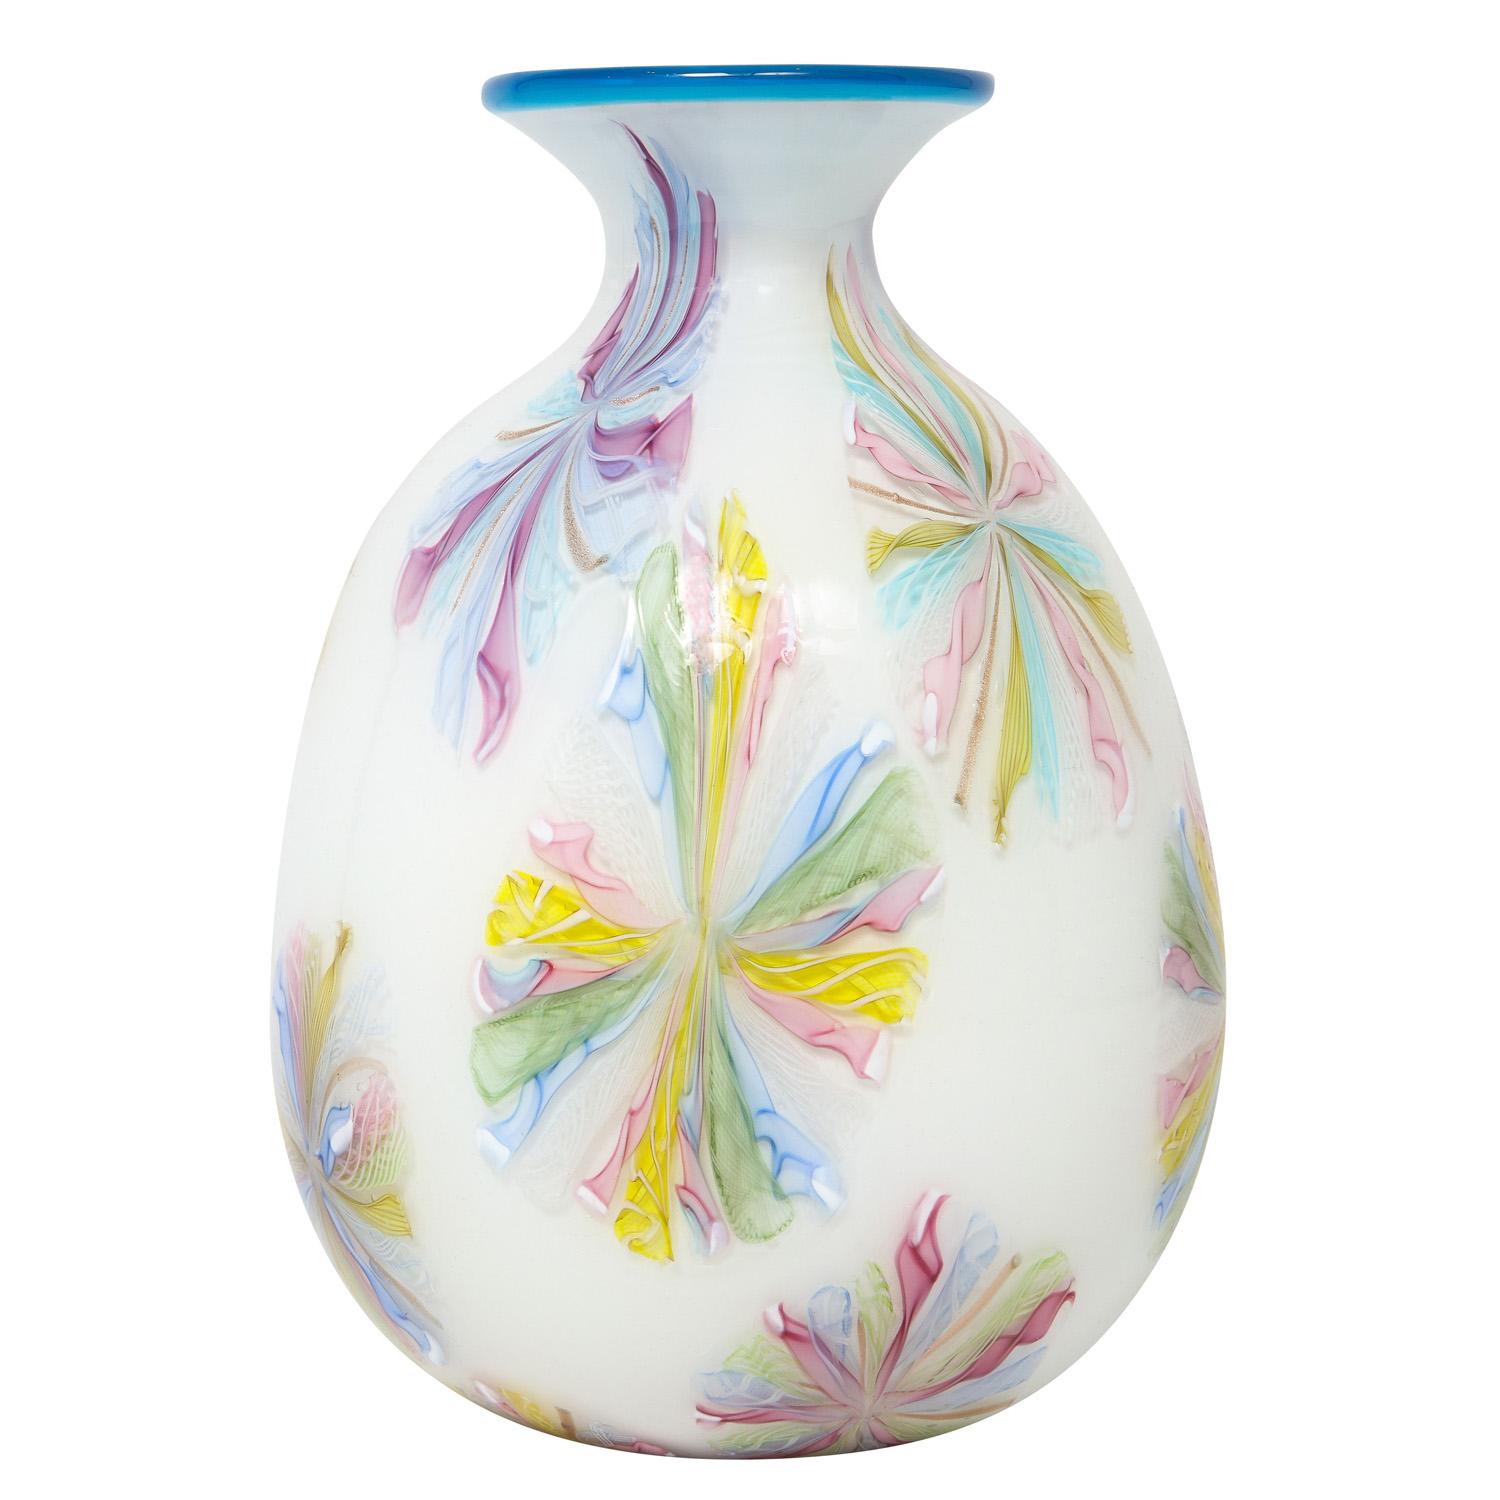 Vase aus mundgeblasenem Glas, farbenfrohe Murrhine über weißem Glas mit blauem Rand, von Arte Vetraria Muranese oder A.V.E.M., Murano Italien, 1950er Jahre. Diese Vase ist wie ein Juwel. Wir haben mehrere Exemplare dieser Serie, und jedes ist auf